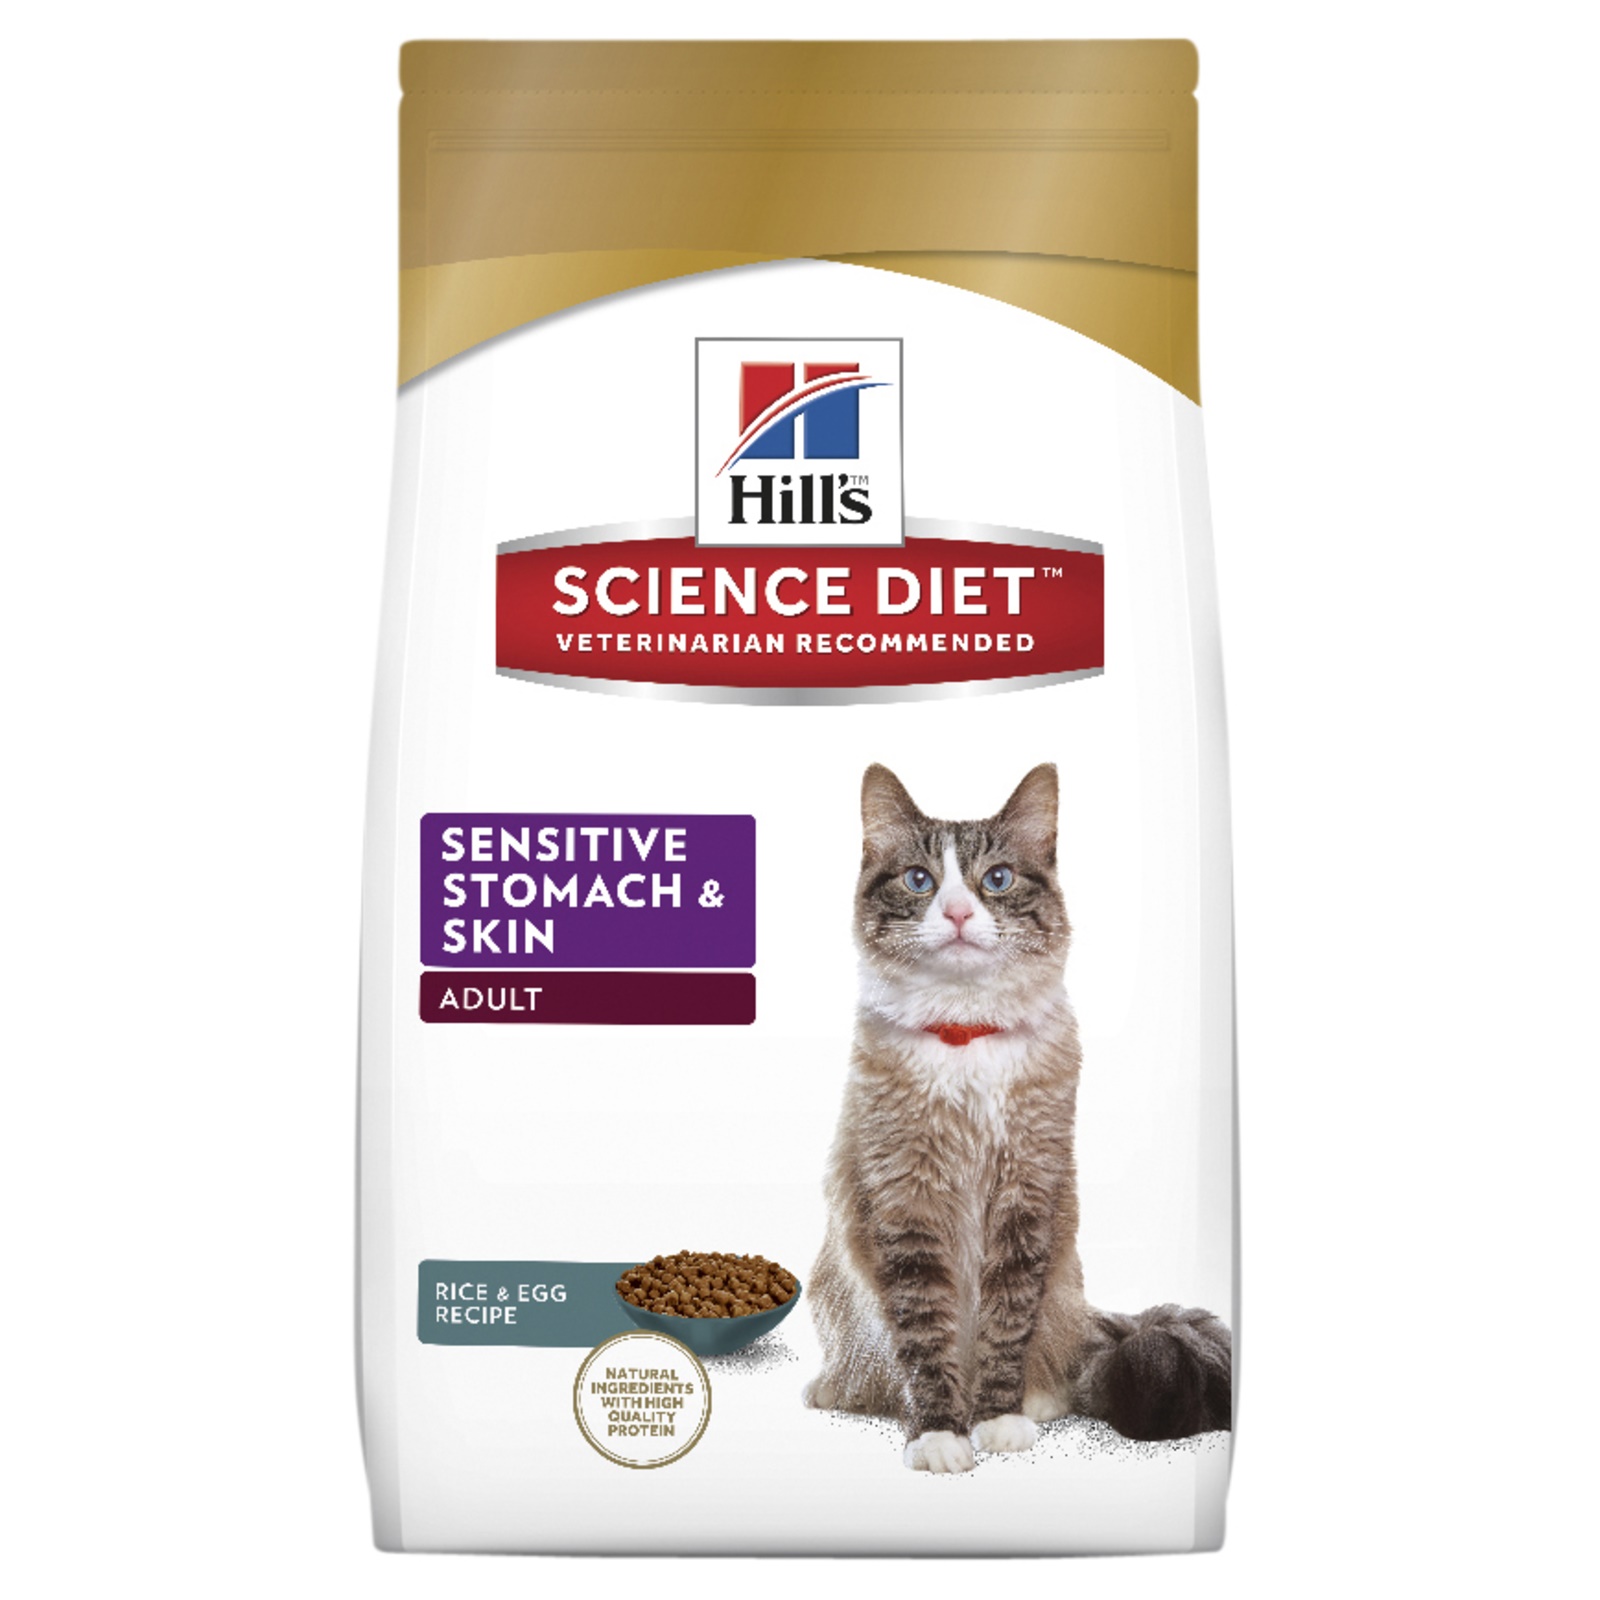 Sensitive Stomach & Skin Cat FoodI Cat Dry Food for Pets